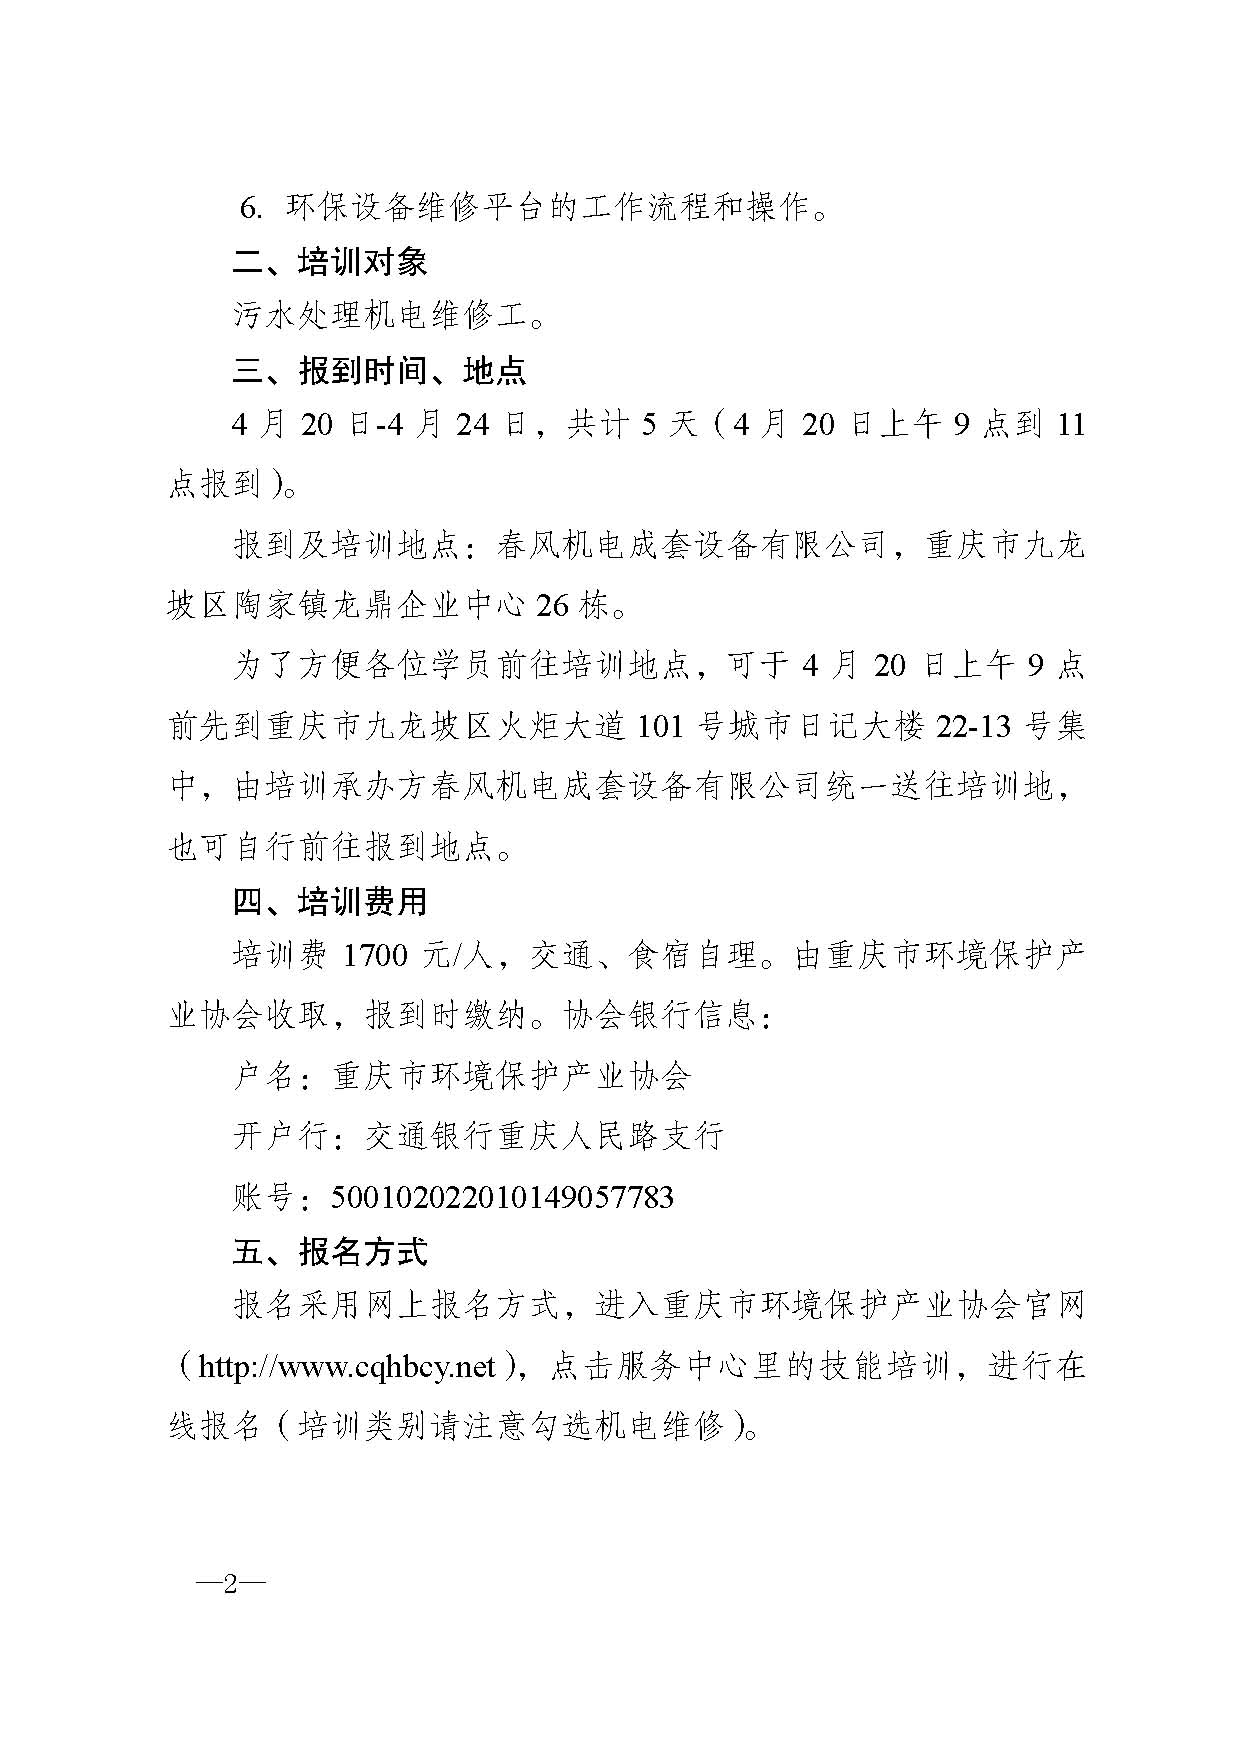 重庆市环境保护产业协会关于举办污水处理机电维修人员技能培训班的通知x_页面_2